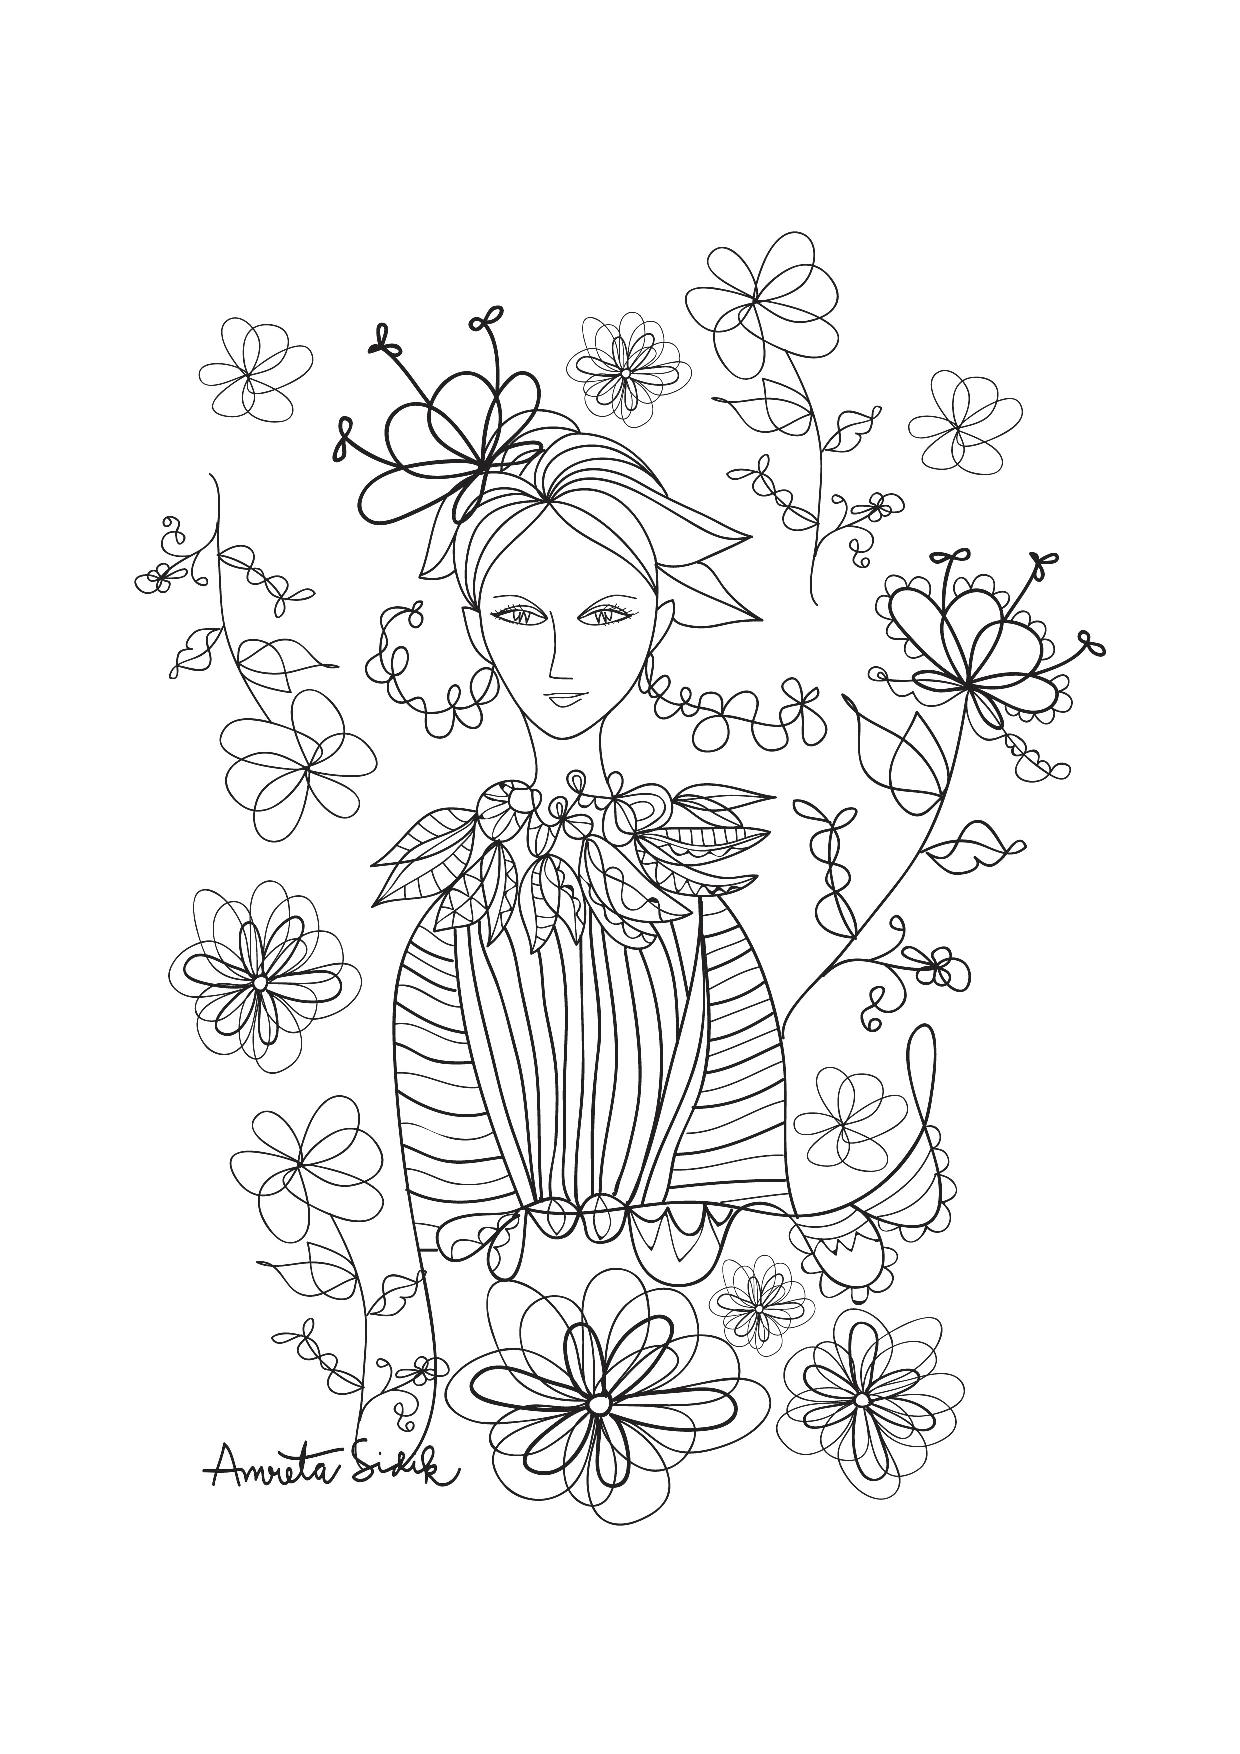 Fille aux fleurs - 2, Artiste : Amreta Sidik